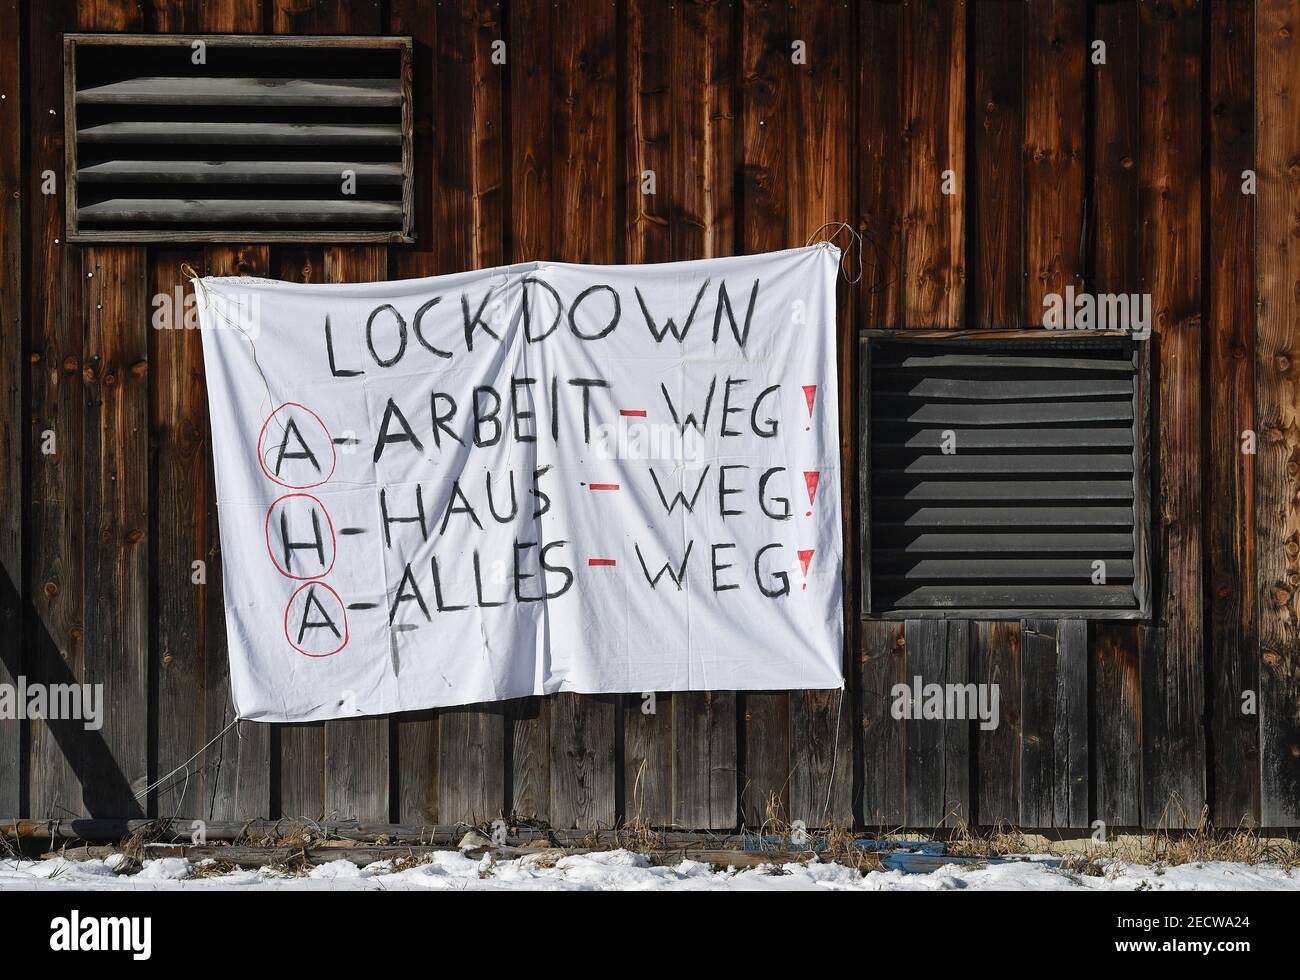 Neuhaus, Alemania. 14 de febrero de 2021. Un banner con el texto "Lockdown AHA Work-away, house-away, everything-away" cuelga de una pila de madera. Crédito: Angelika warmuth/dpa/Alamy Live News Foto de stock